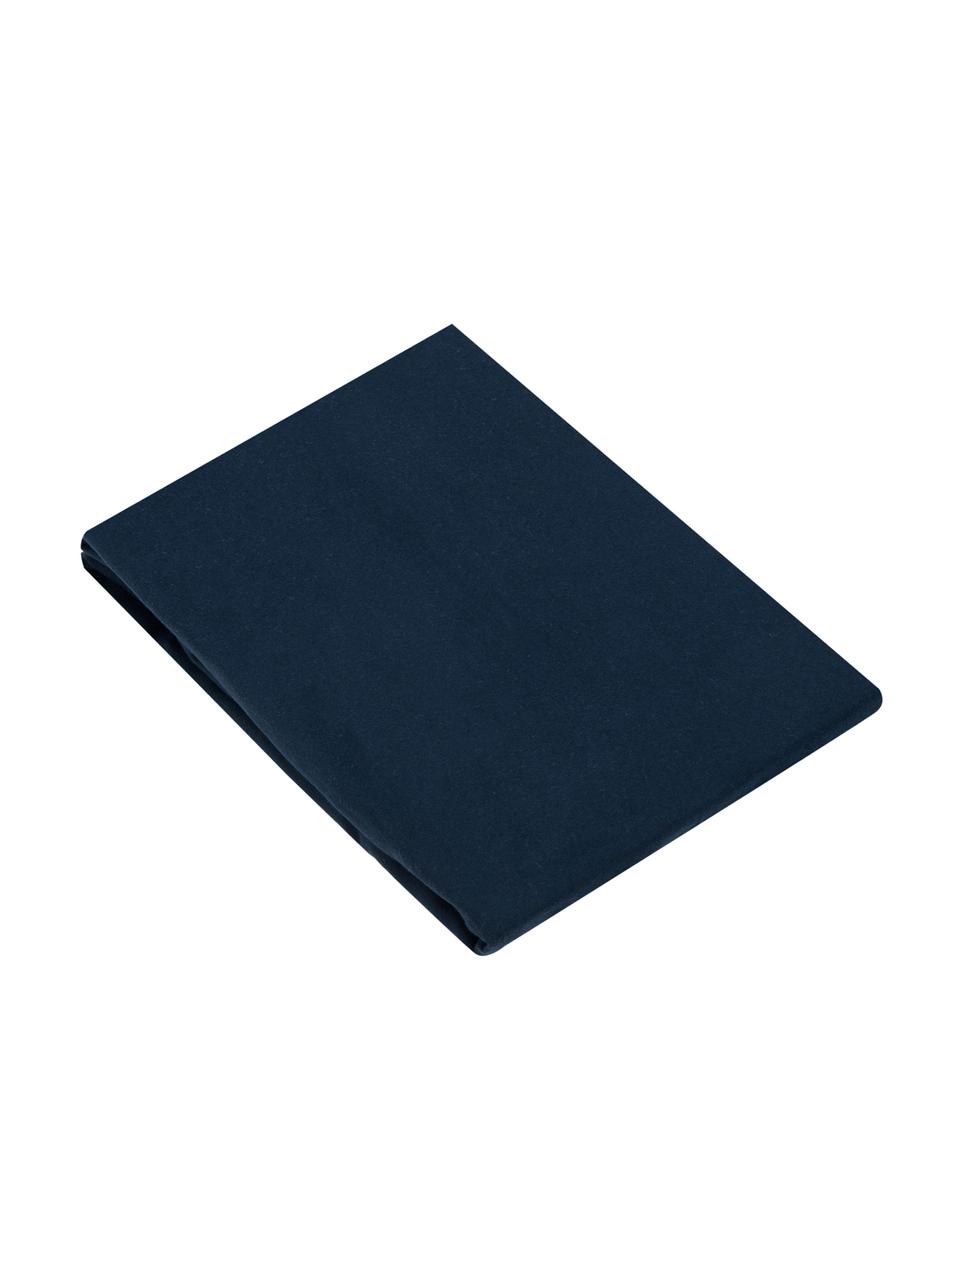 Lenzuolo con angoli in flanella blu navy Biba, Tessuto: flanella La flanella è un, Blu scuro, Larg. 180 x Lung. 200 cm